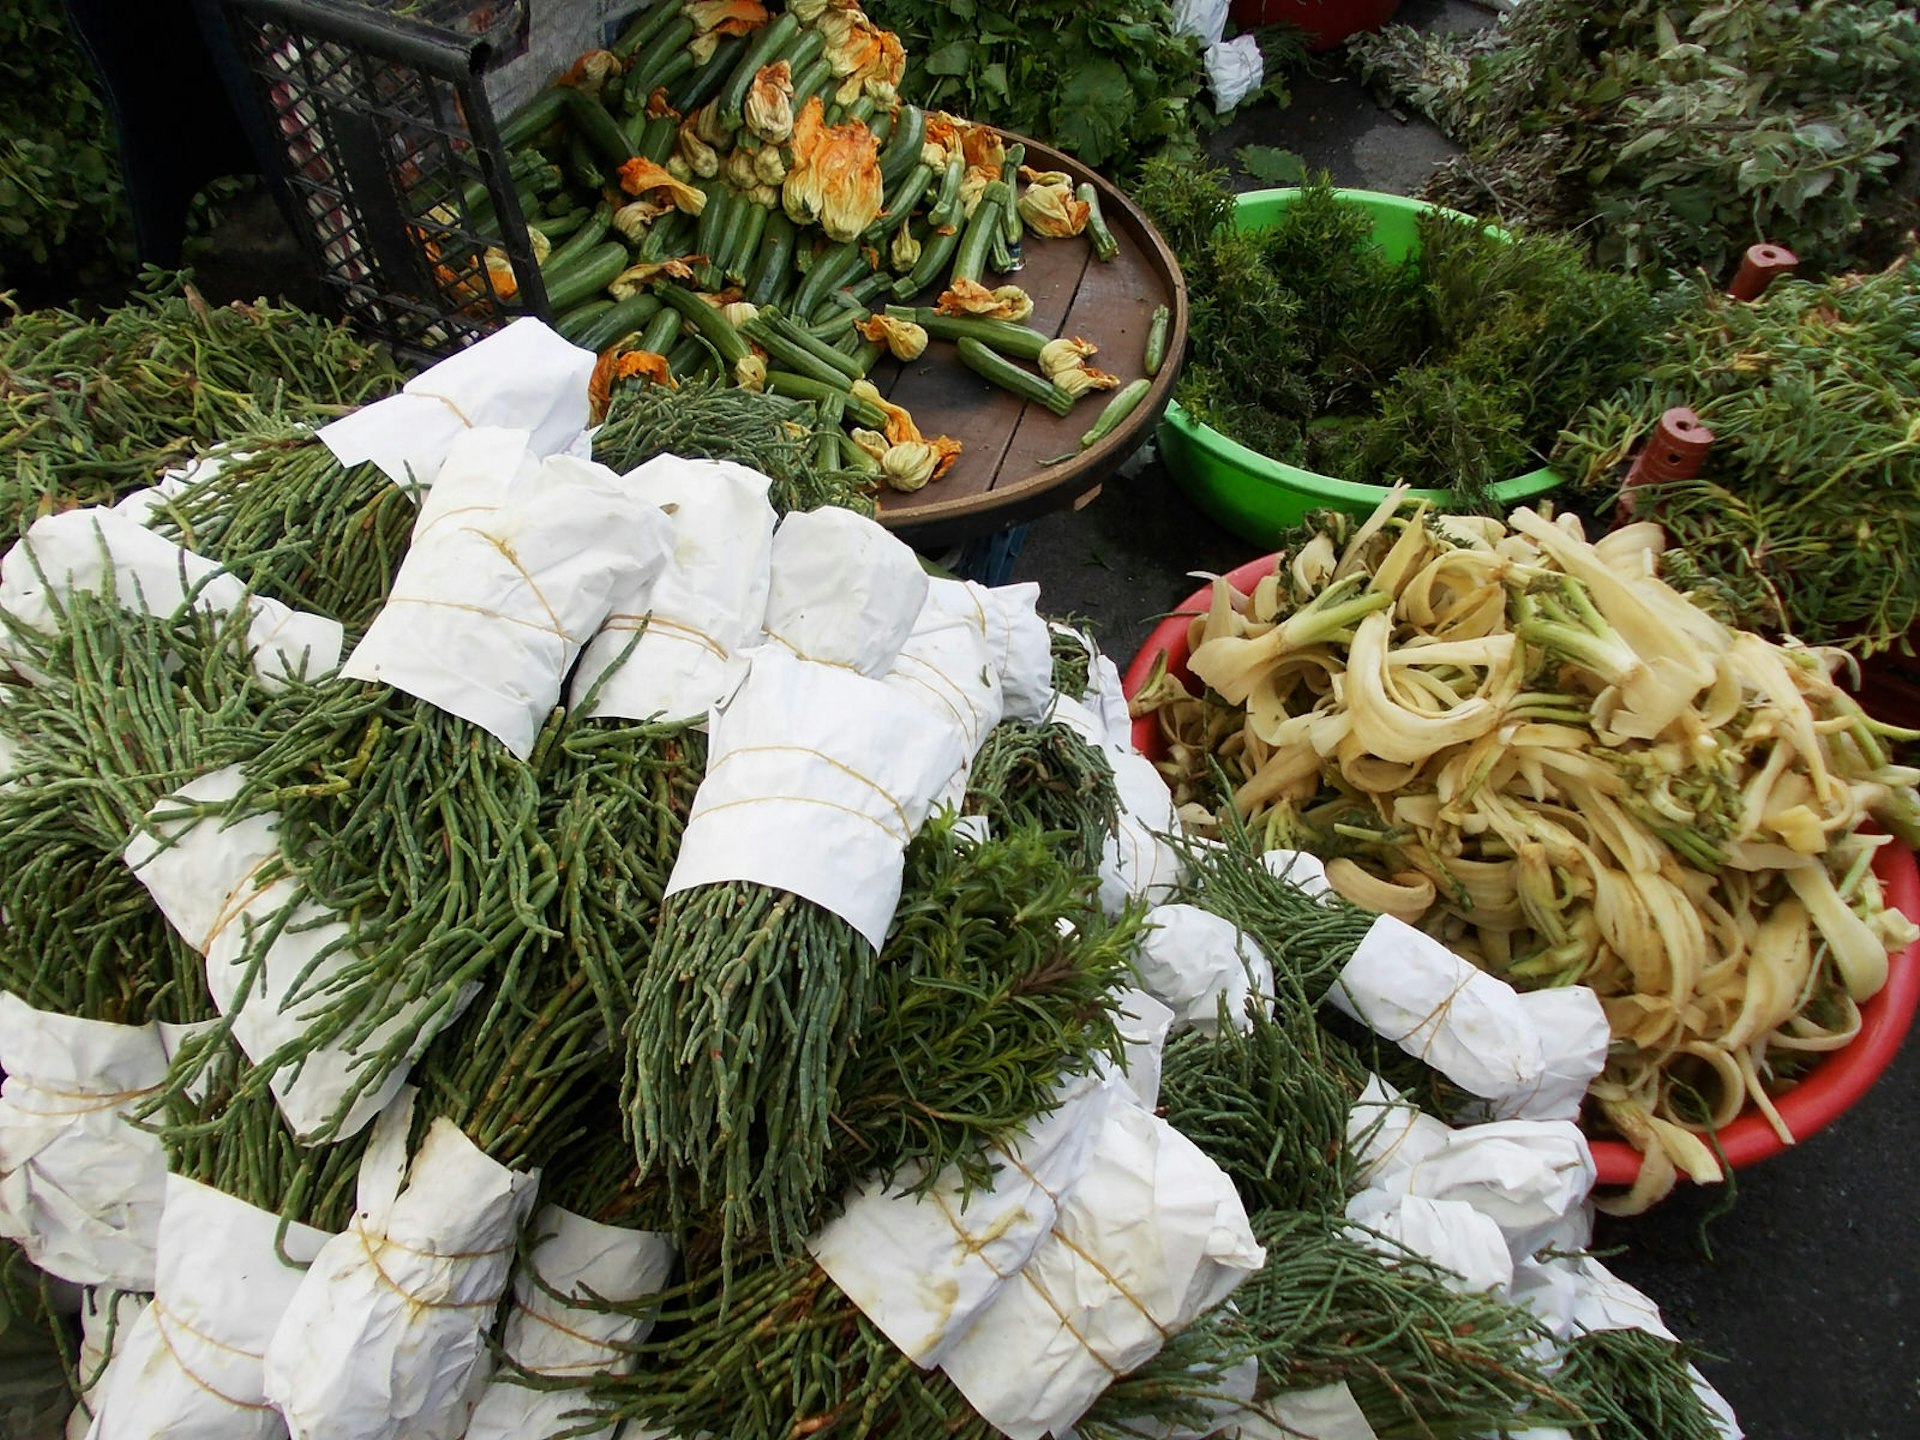 Wild greens stacked in a market in Urla, Turkey